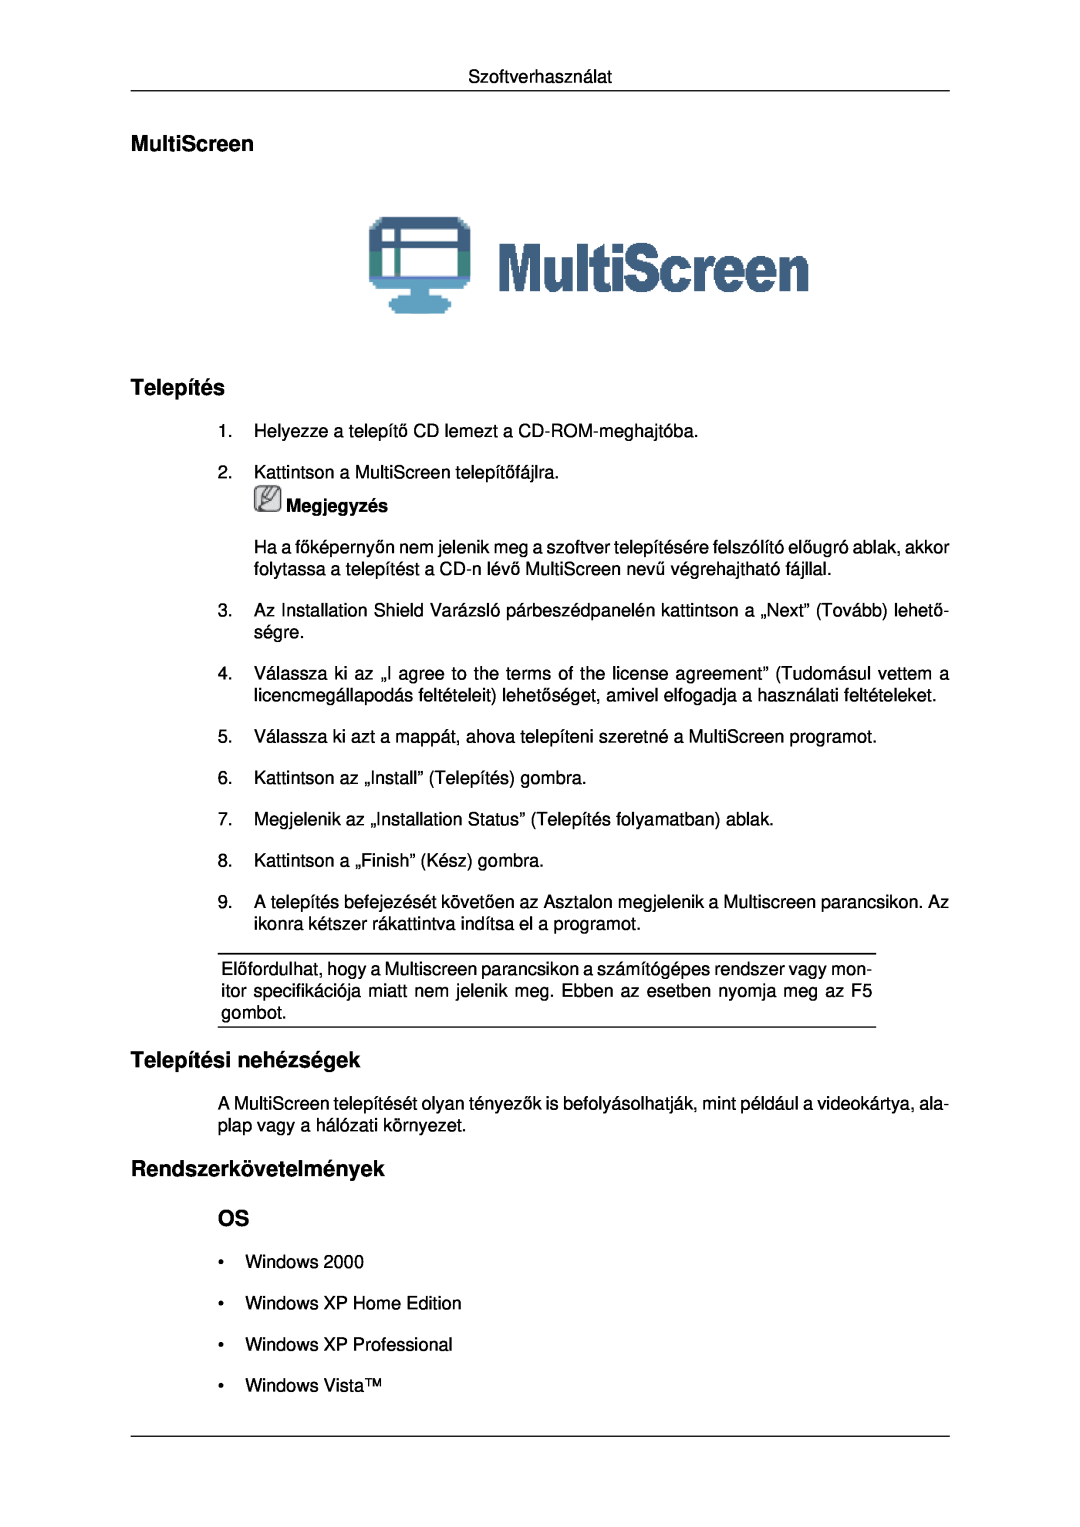 Samsung LS19MYDEBCBEDC, LS22MYDEBCA/EN MultiScreen Telepítés, Telepítési nehézségek, Rendszerkövetelmények OS, Megjegyzés 